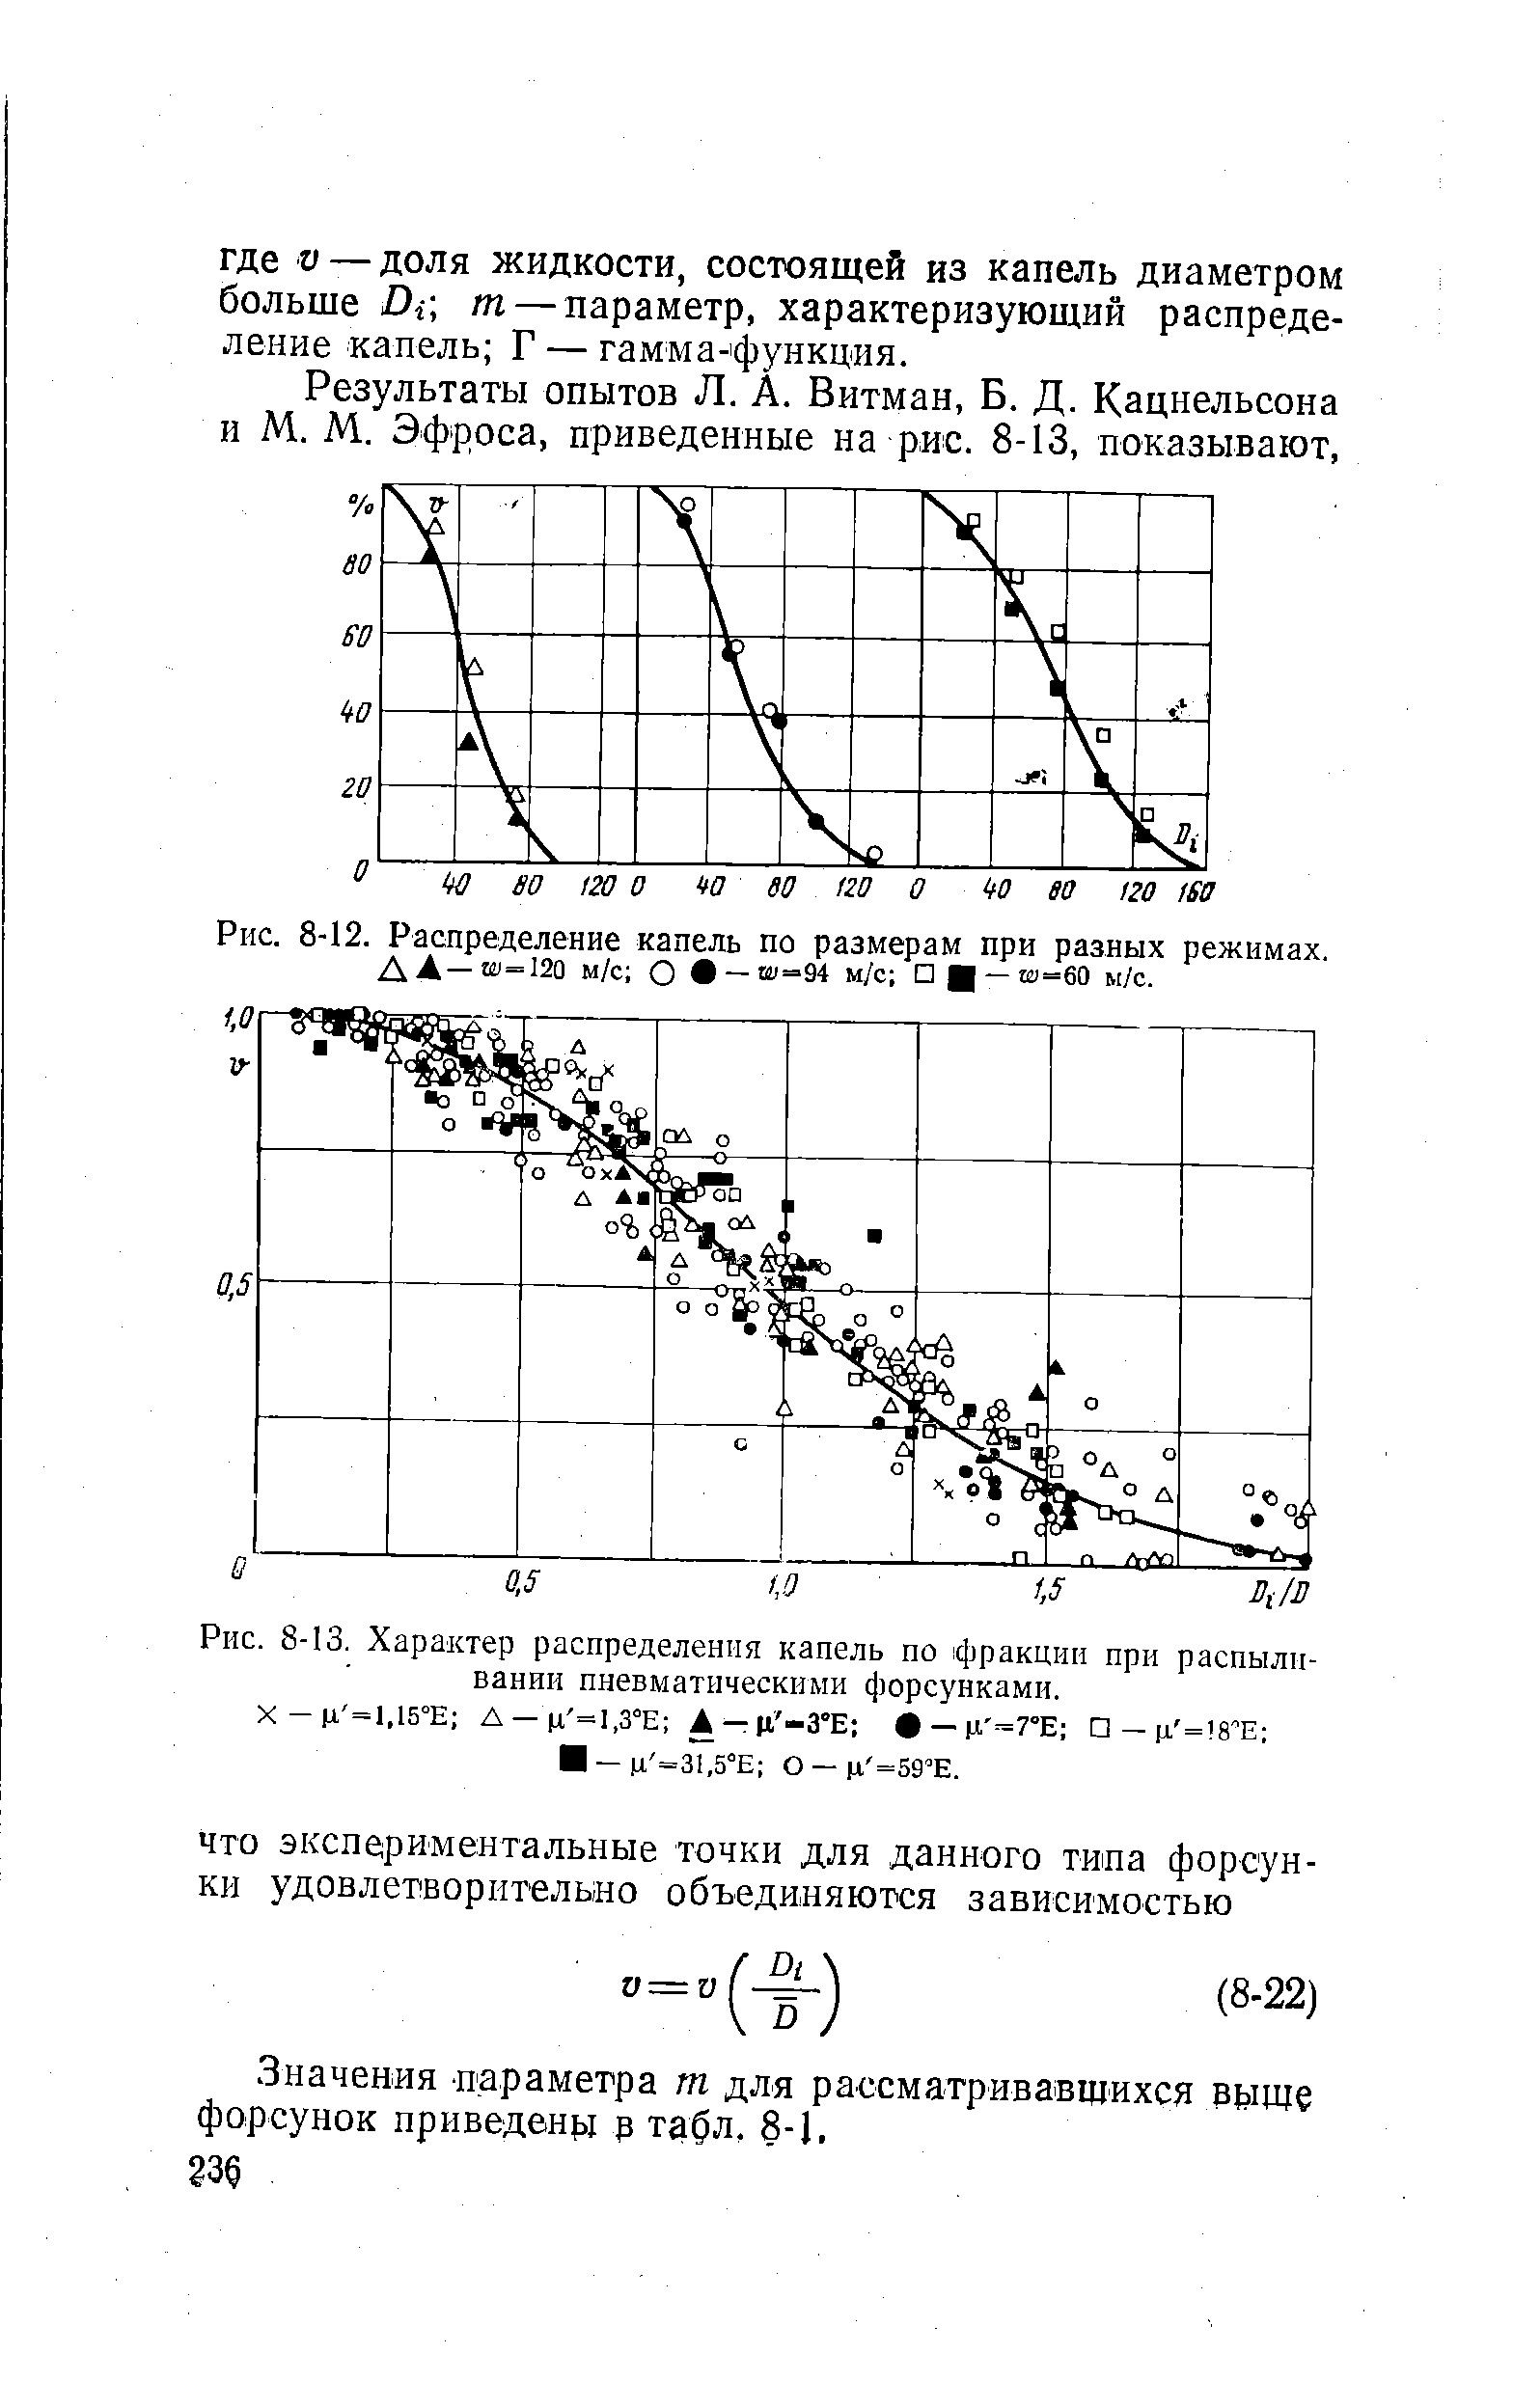 Рис. 8-12. Распределение капель по размерам при разных режимах. ДА—И1-120 м/с О —Ш =94 м/с Ц —ш=60 м/с.
